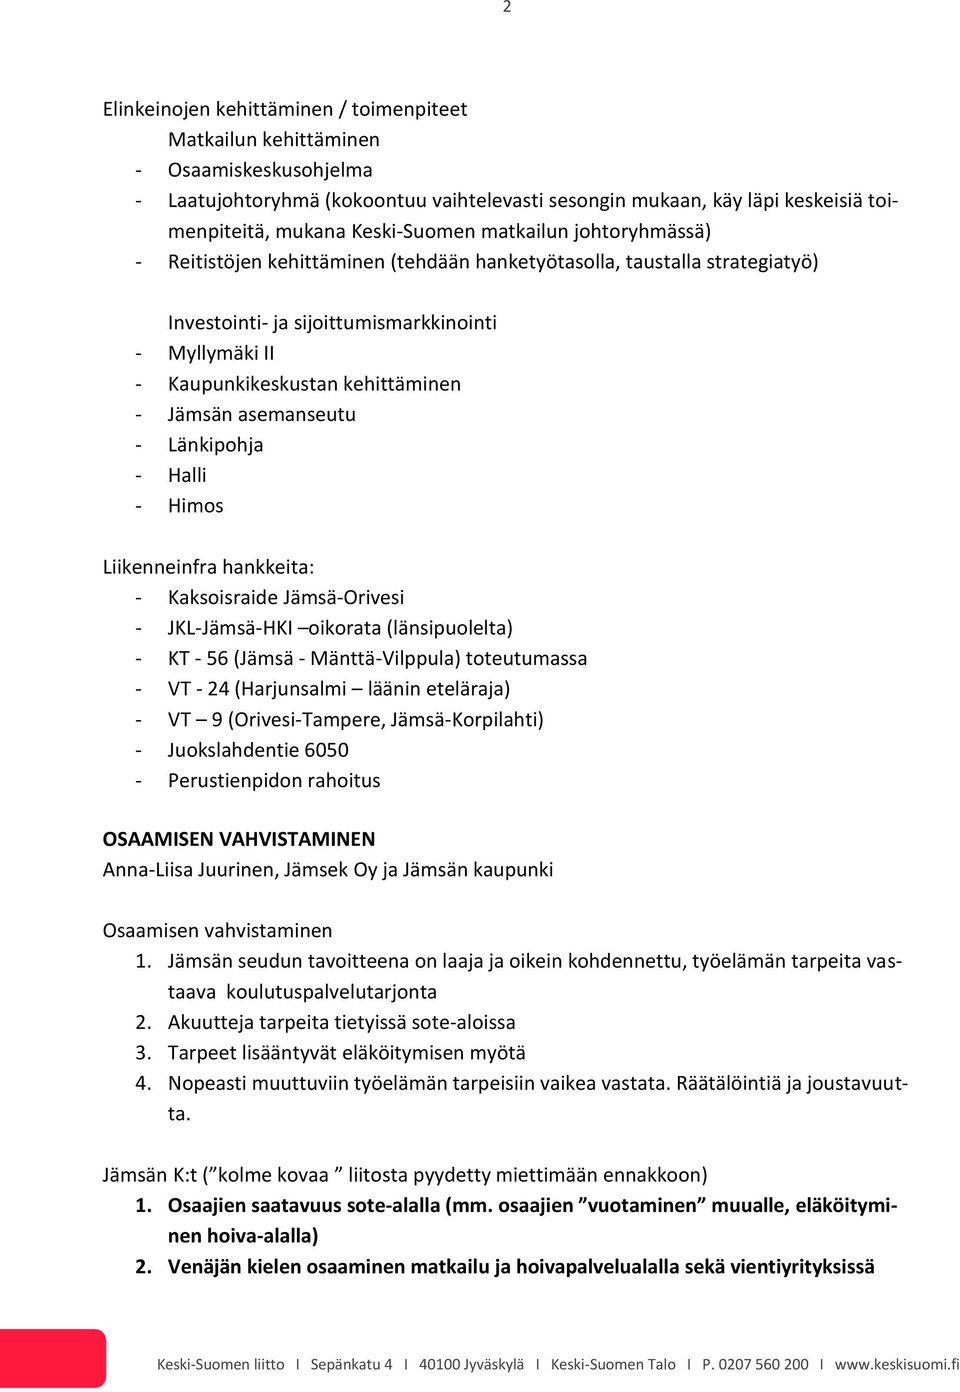 kehittäminen - Jämsän asemanseutu - Länkipohja - Halli - Himos Liikenneinfra hankkeita: - Kaksoisraide Jämsä-Orivesi - JKL-Jämsä-HKI oikorata (länsipuolelta) - KT - 56 (Jämsä - Mänttä-Vilppula)